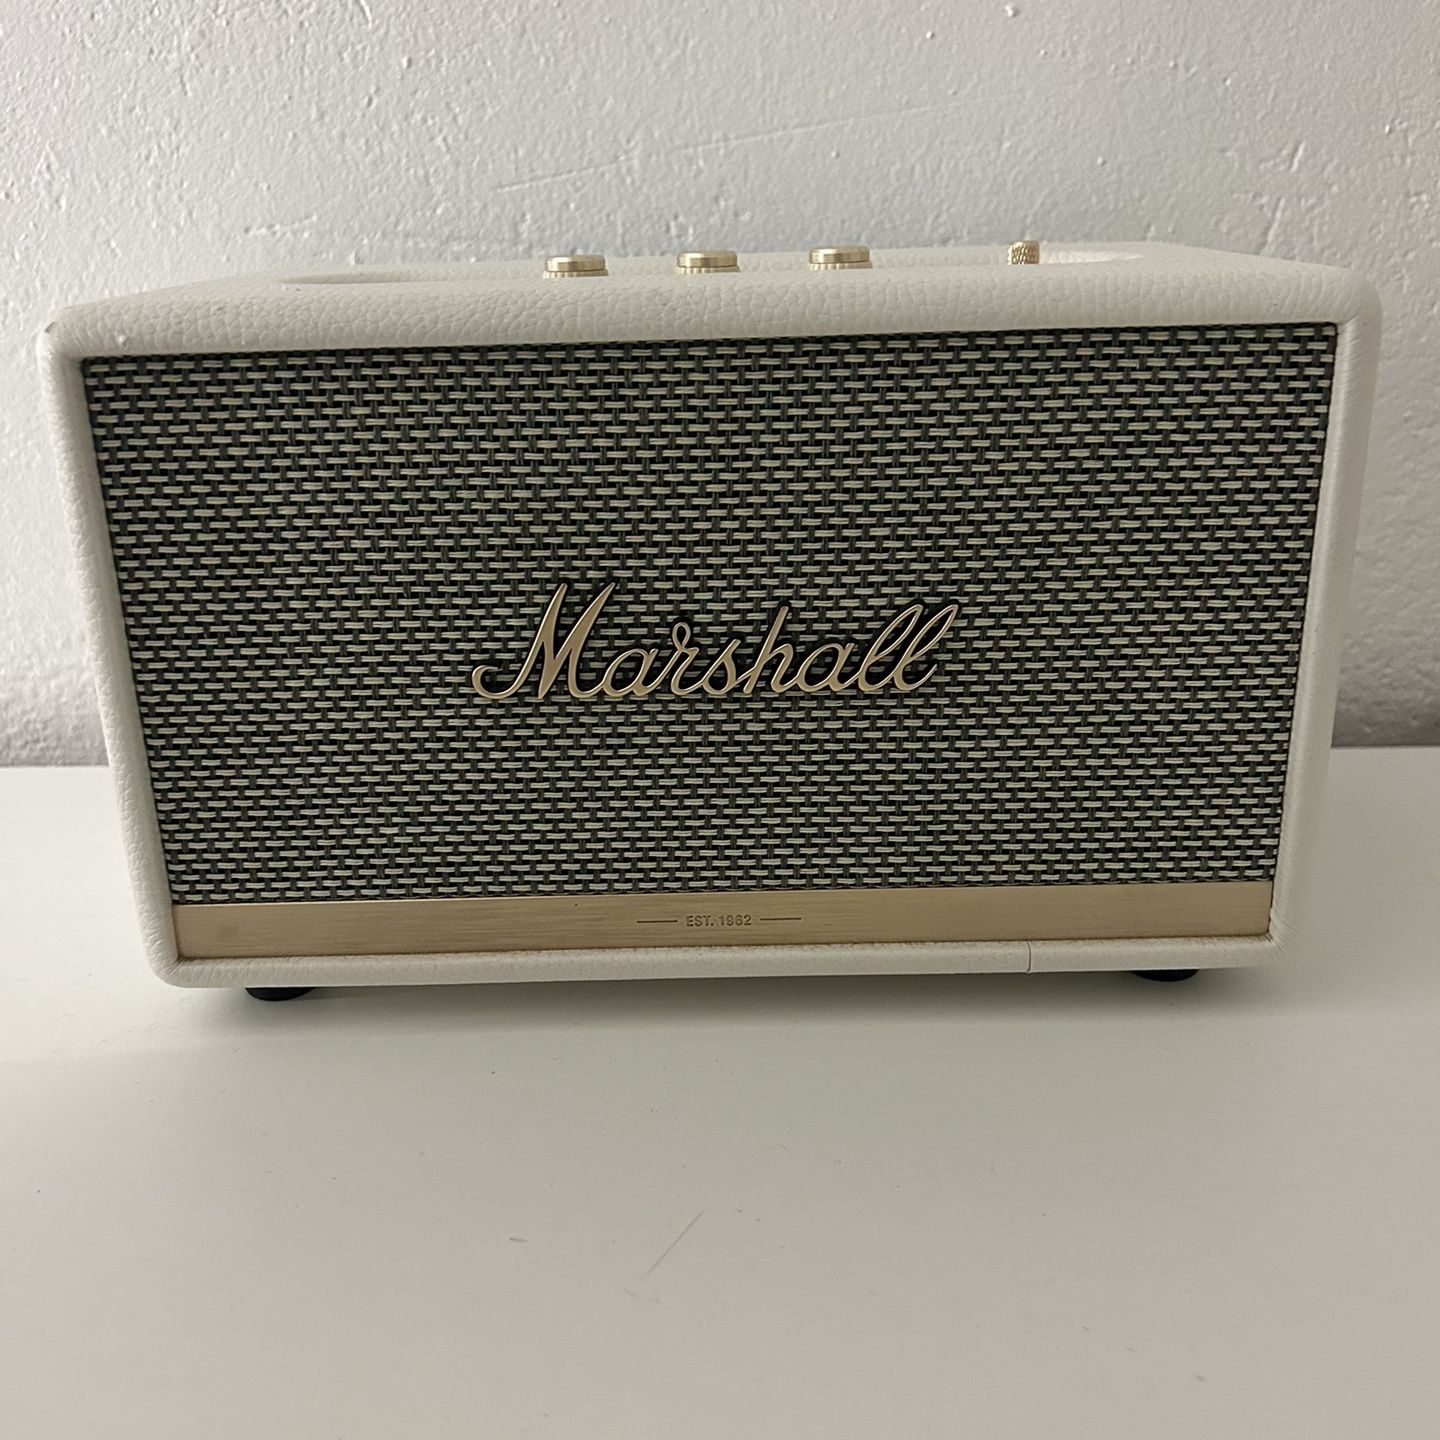 Marshall Bluetooth Speaker 